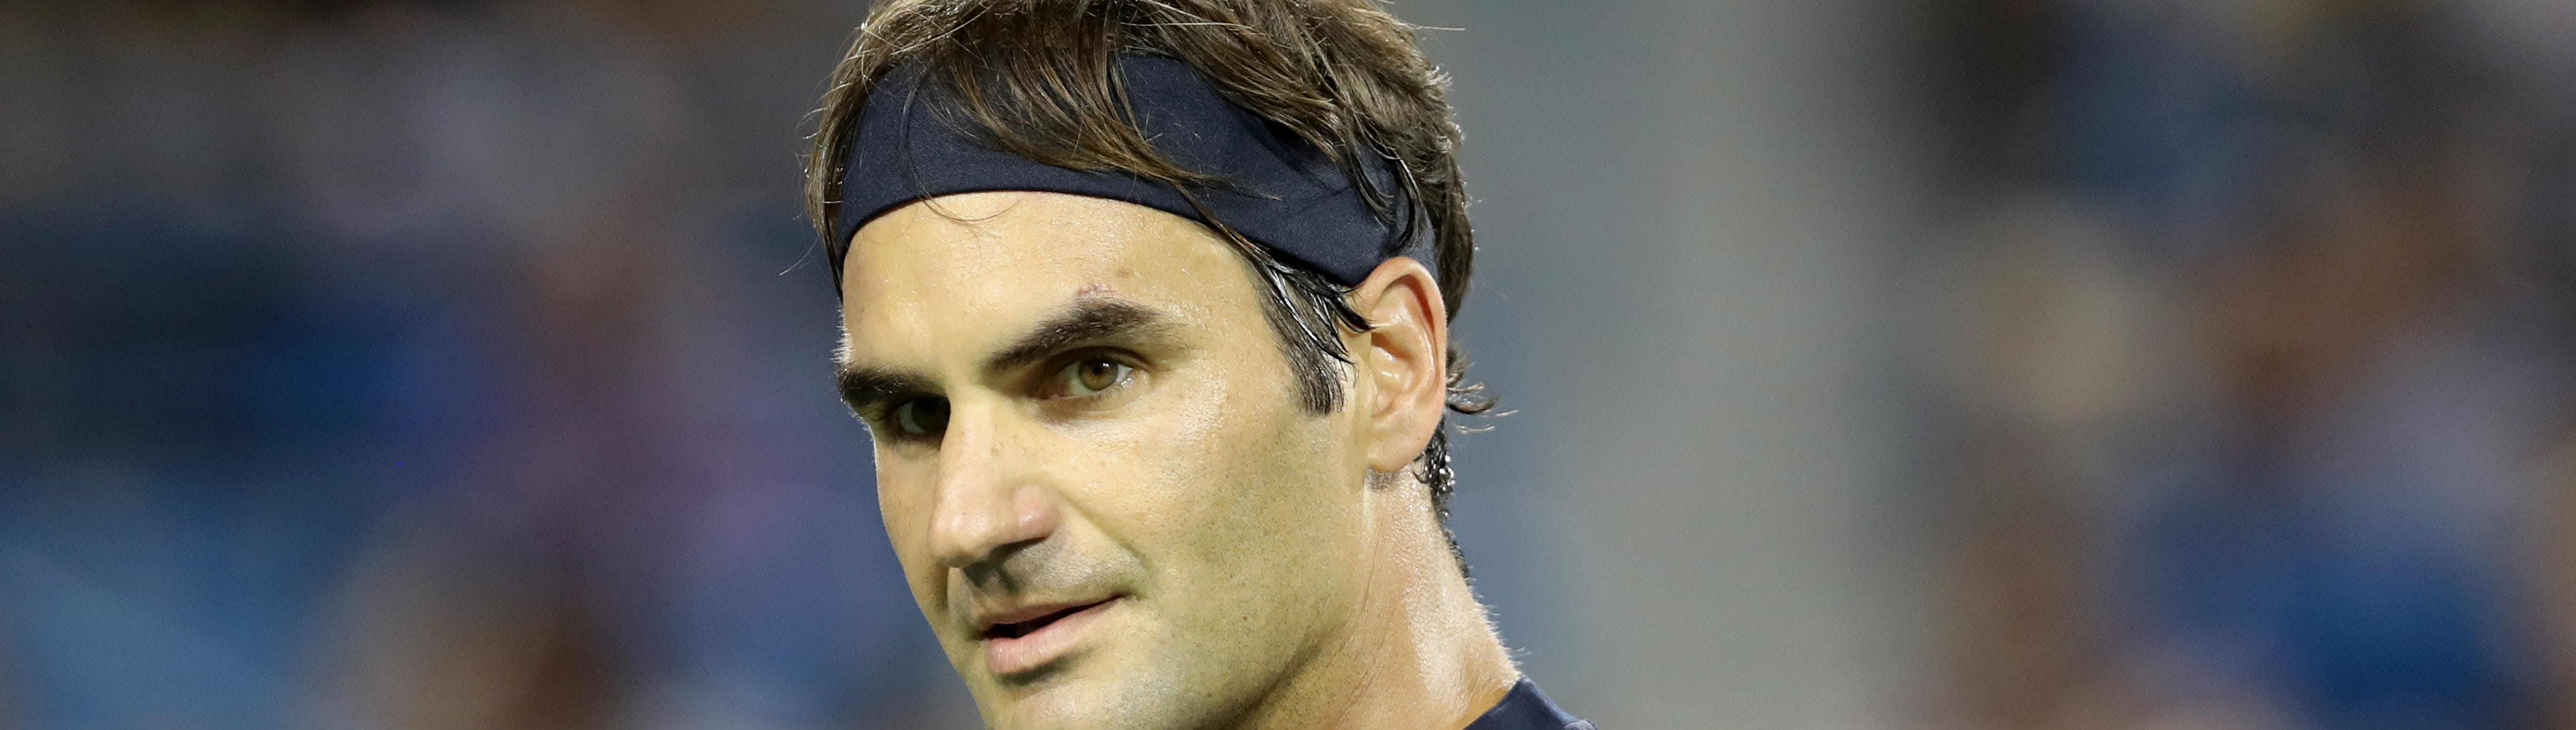 Masters 1000 Cincinnati, Federer lanciato verso i quarti: Kecmanovic vuole stupire ancora